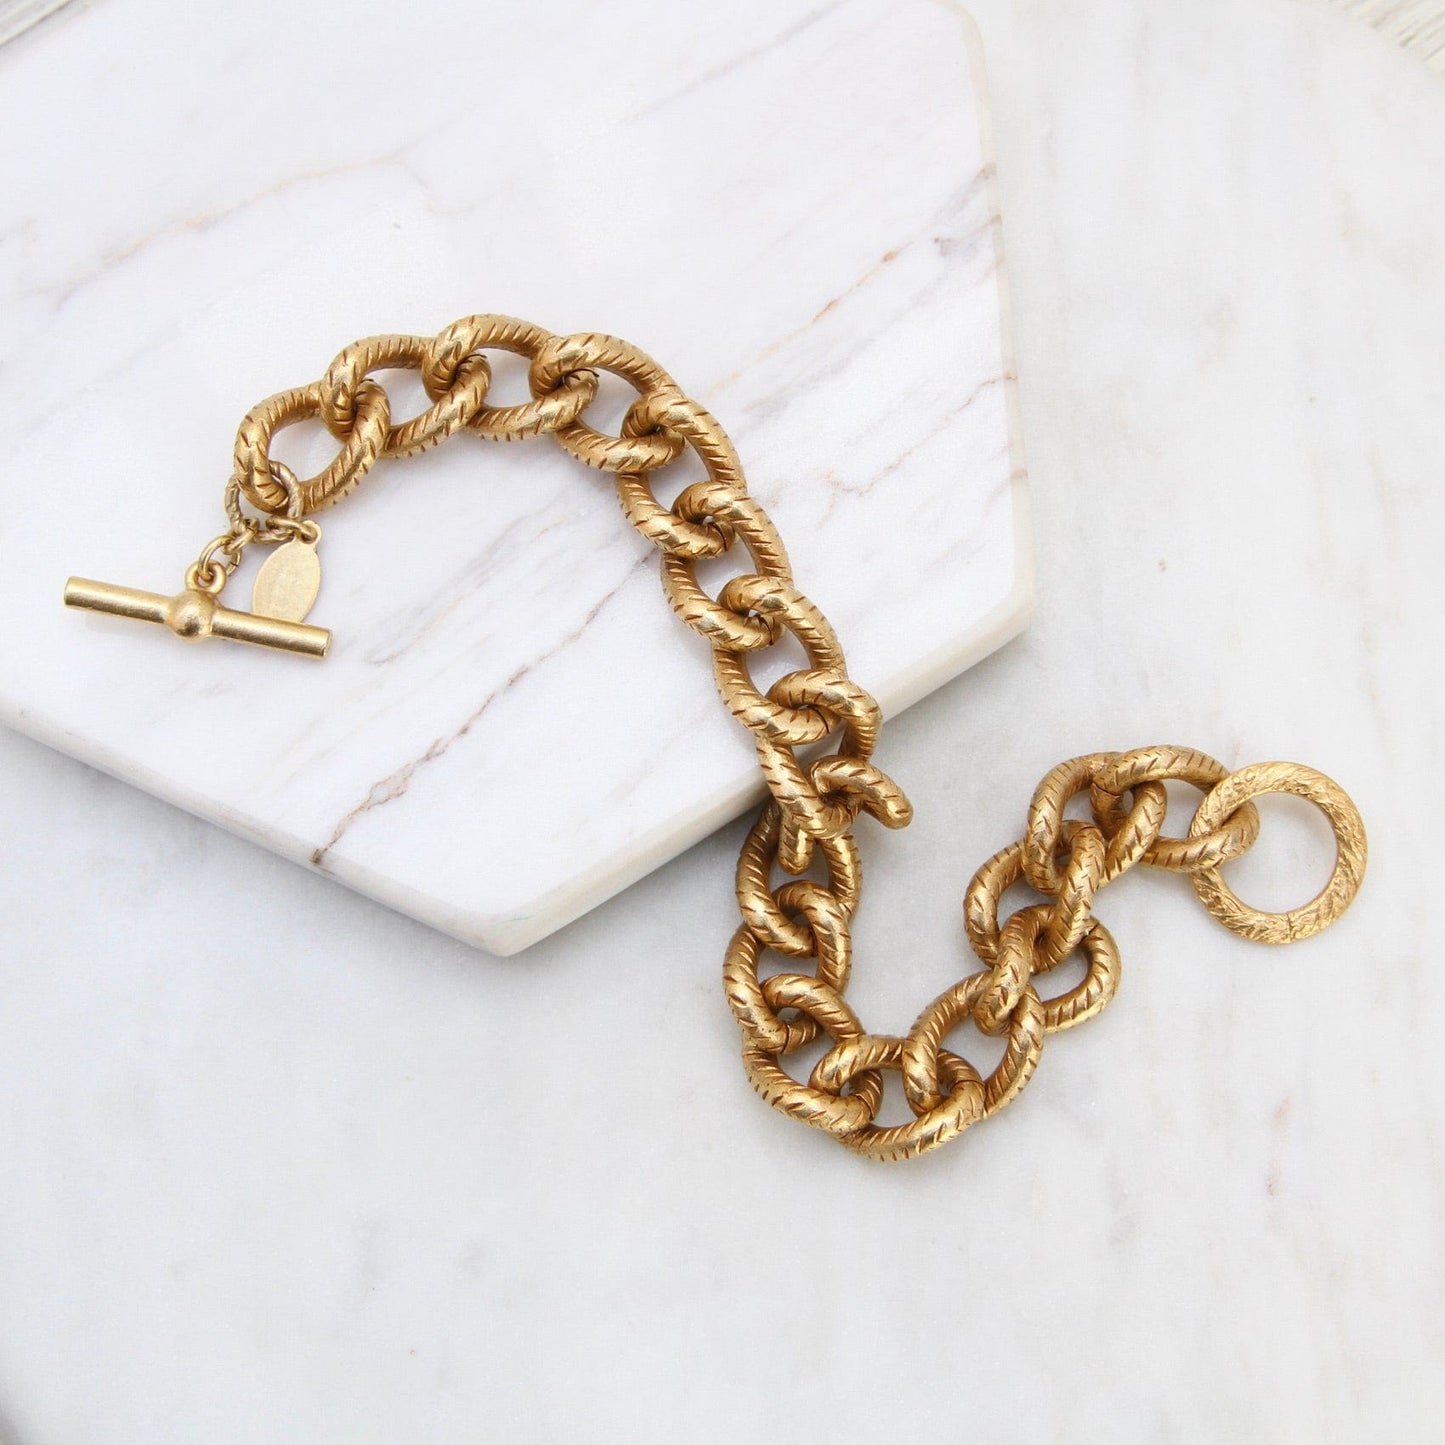 BRC-JM Textured Heavy Curb Chain Bracelet - Gold Plate